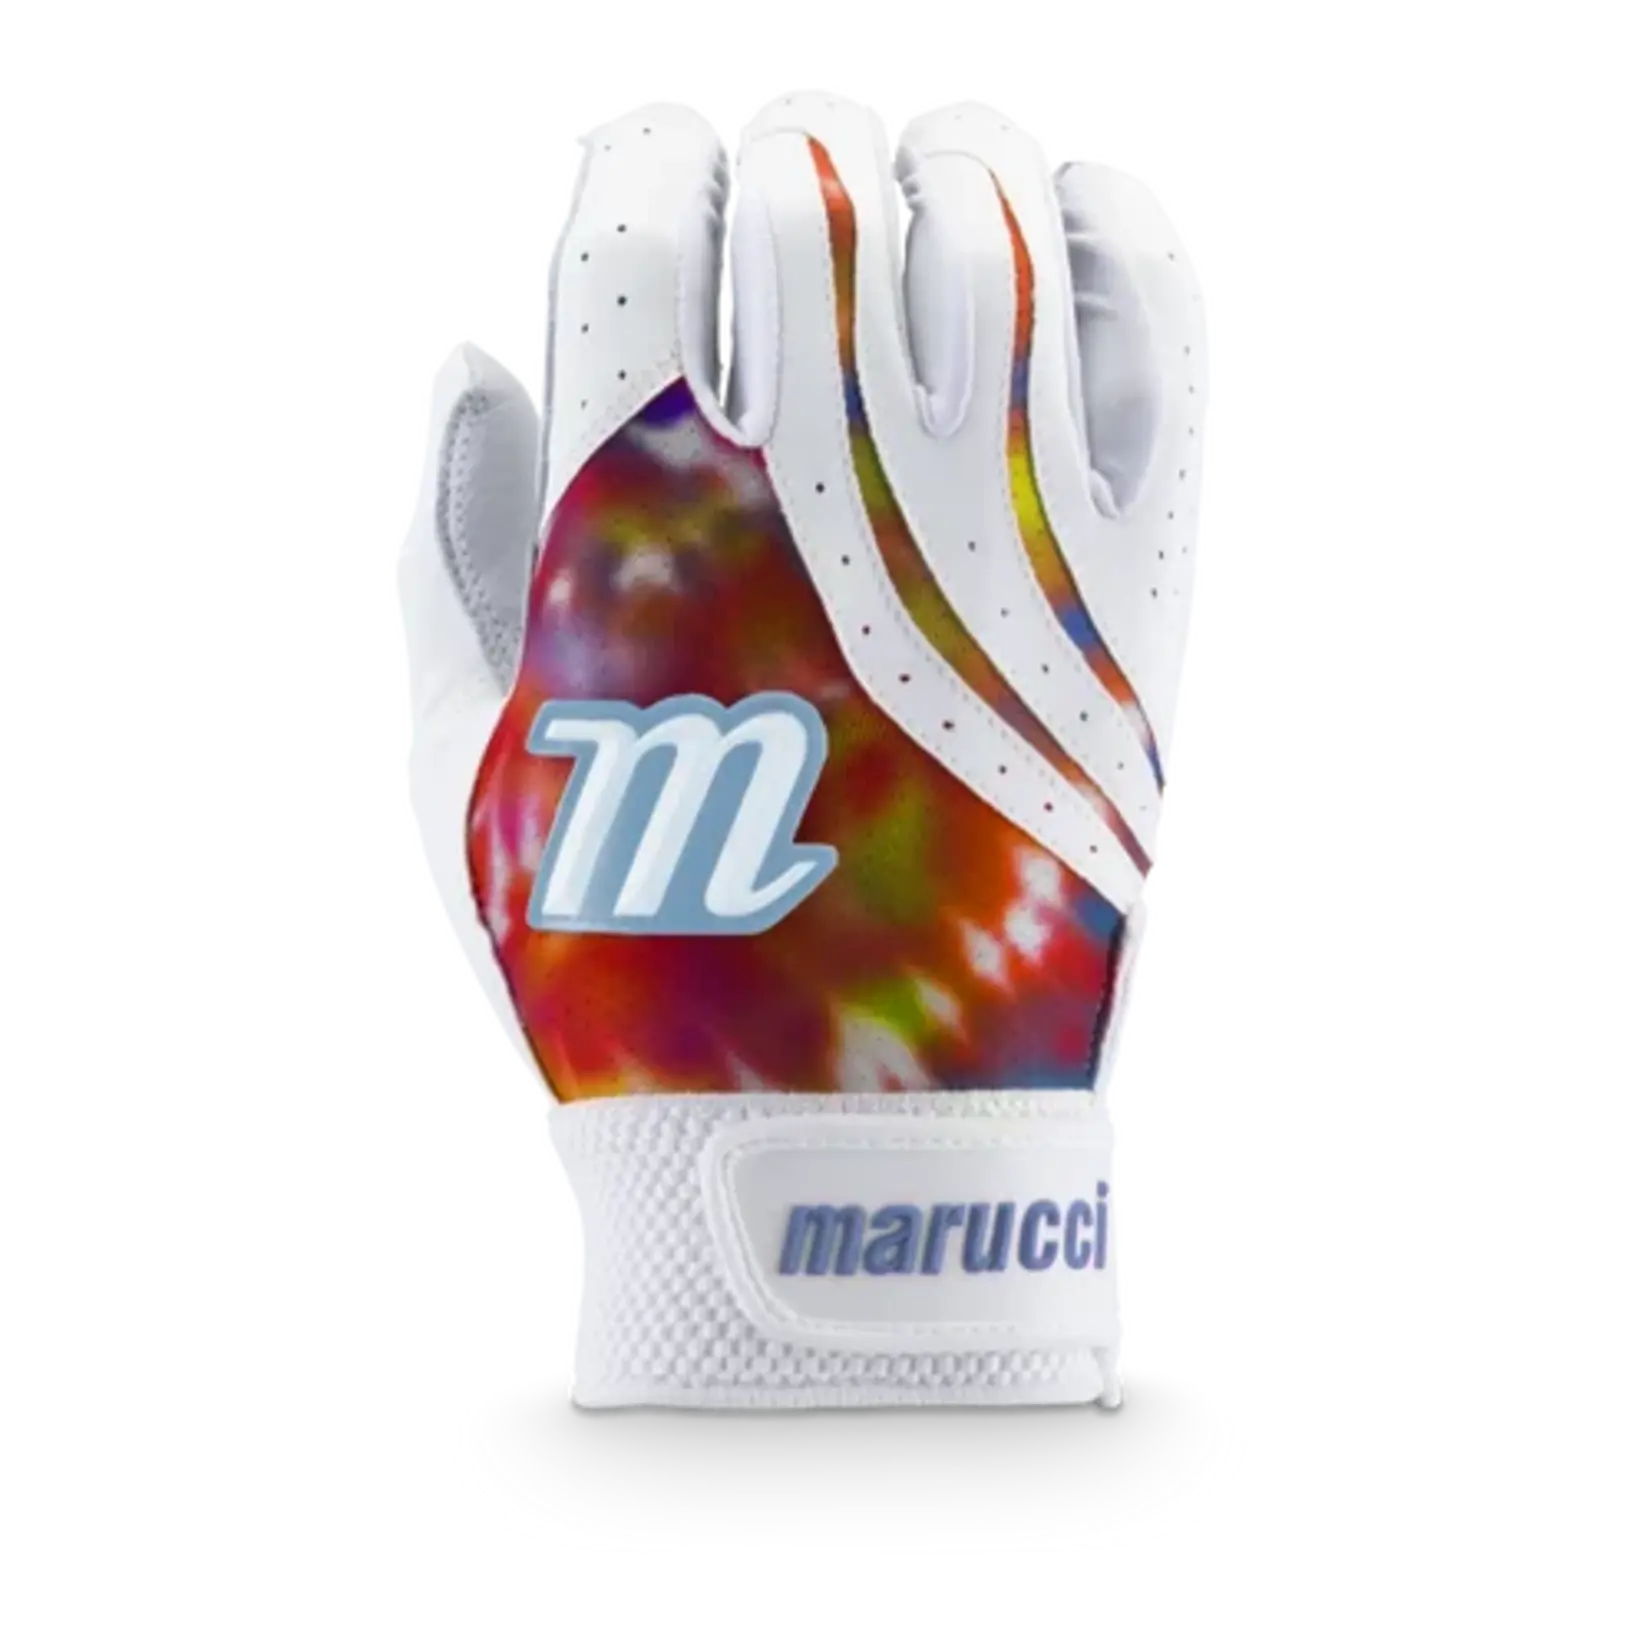 Marucci Marucci Iris Fastpitch Batting Gloves